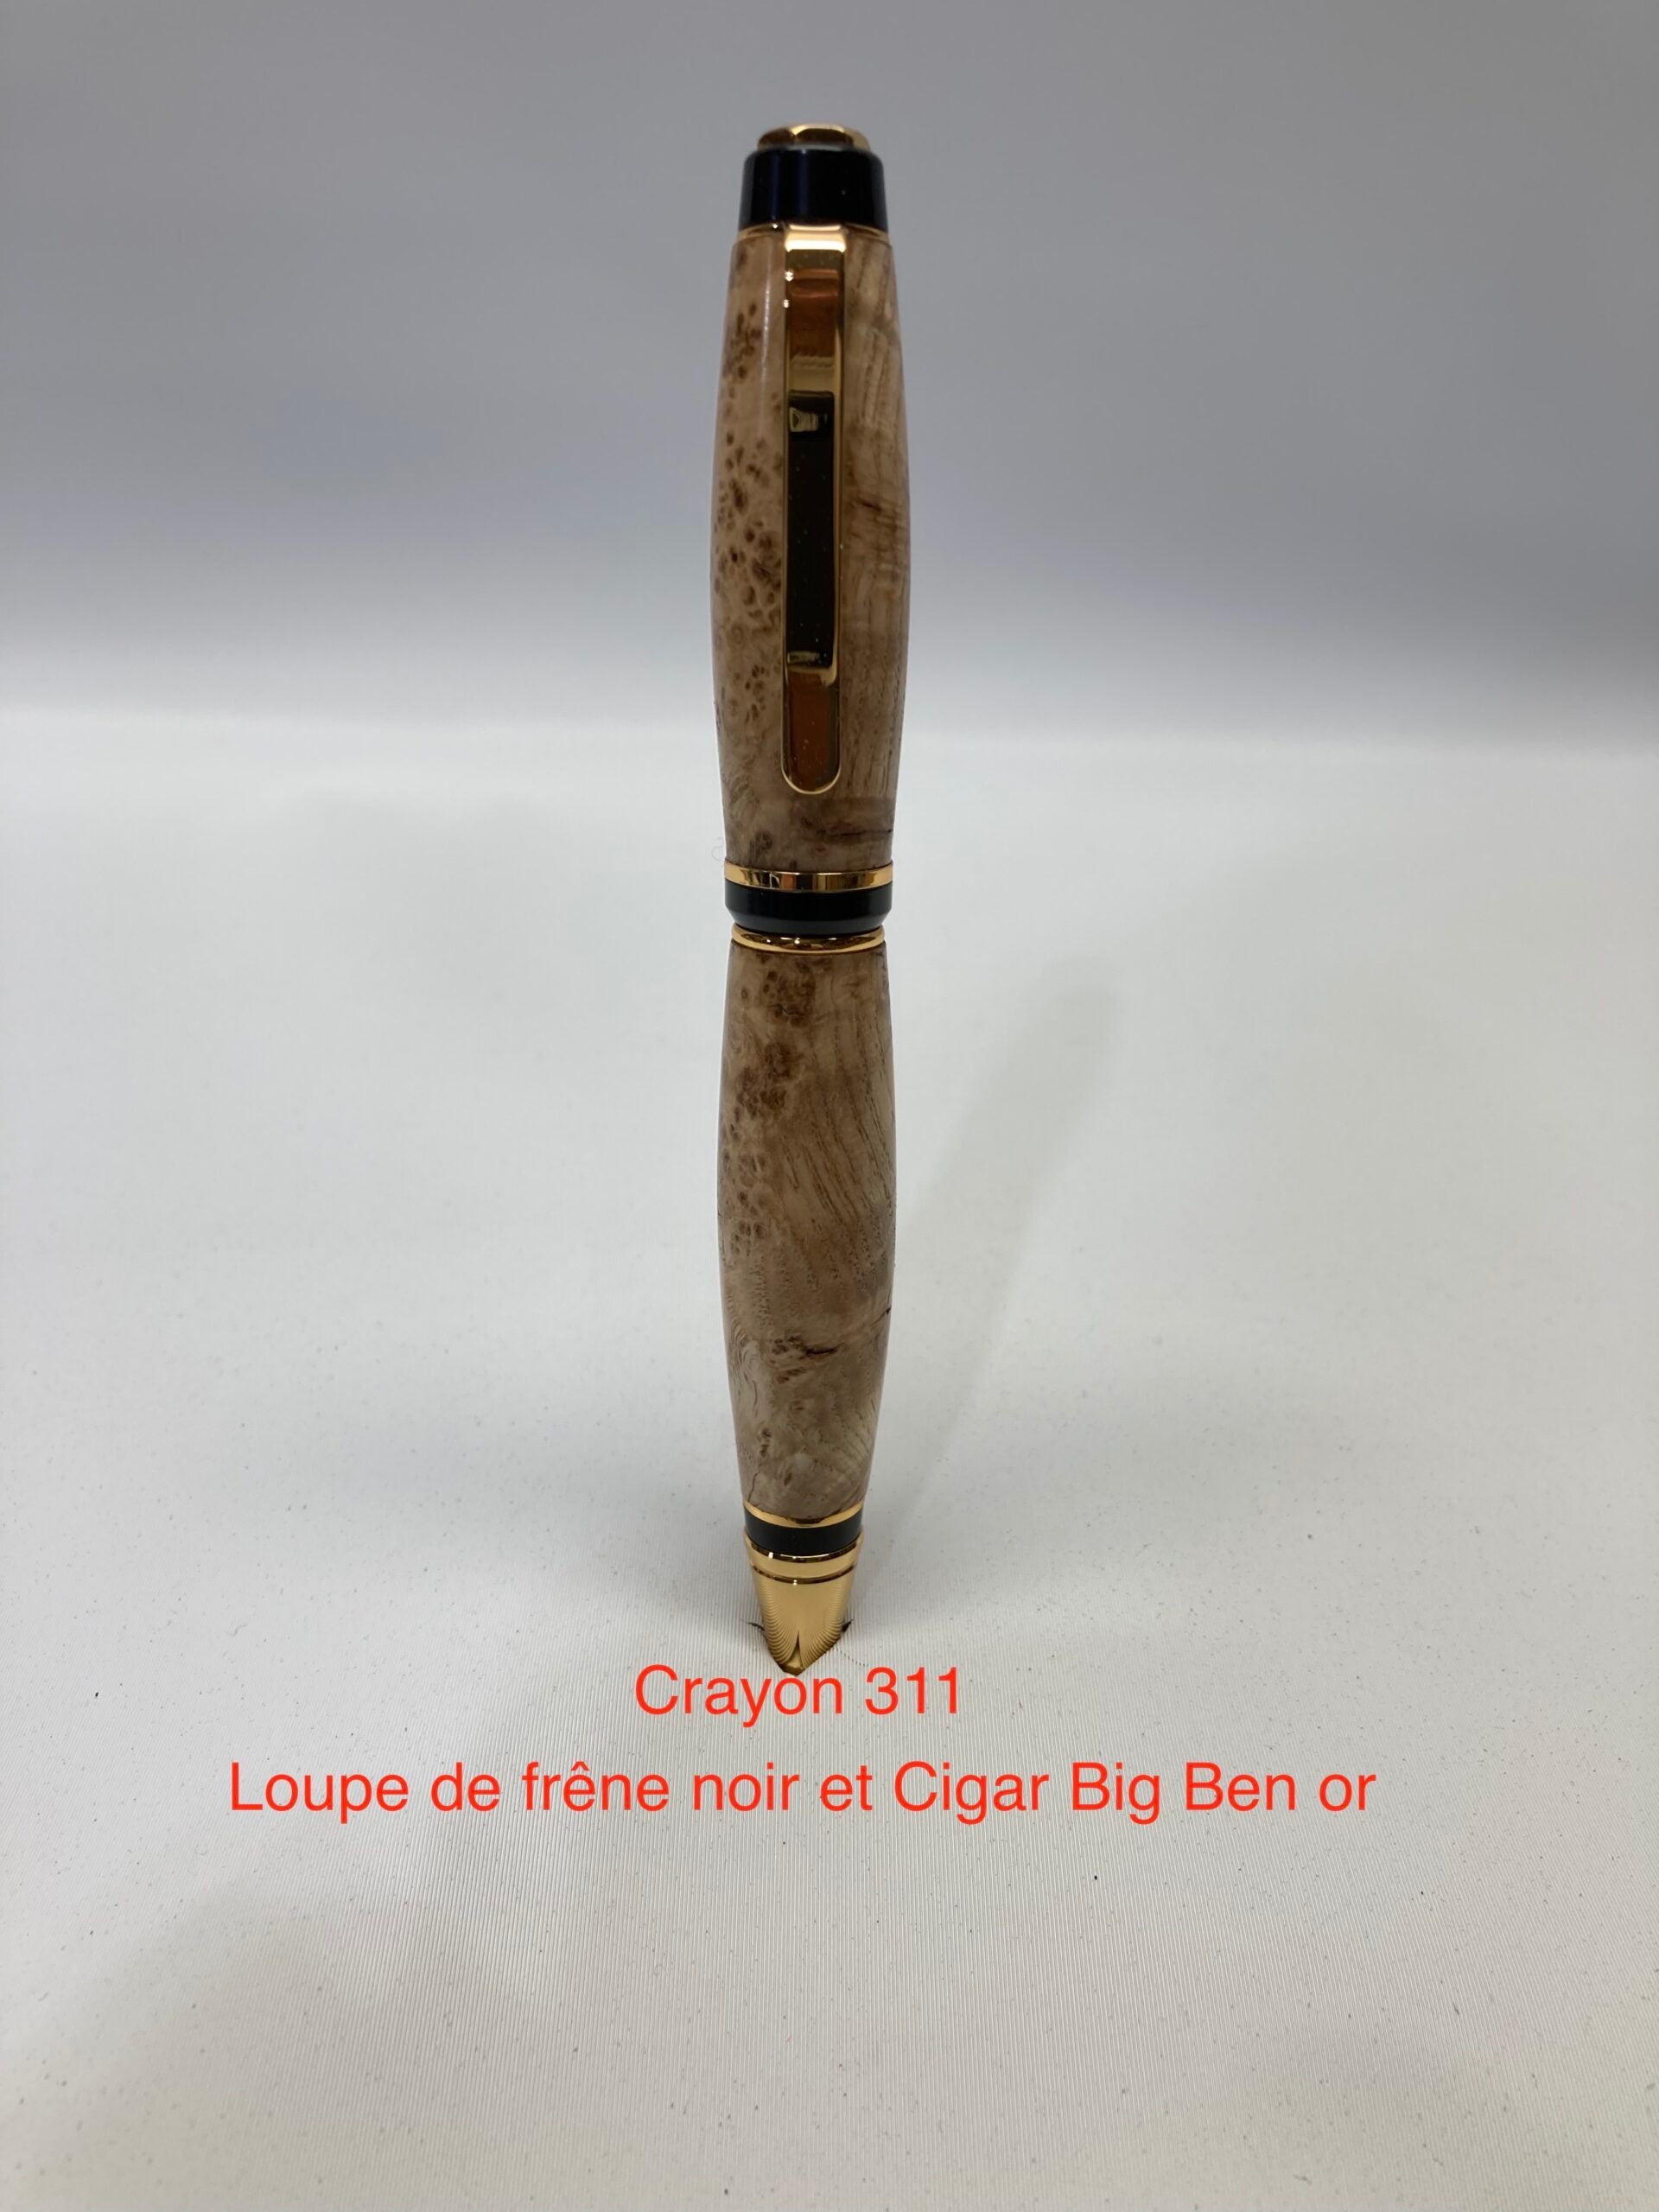 Cigare Big Ben, loupe de frêne noir et or